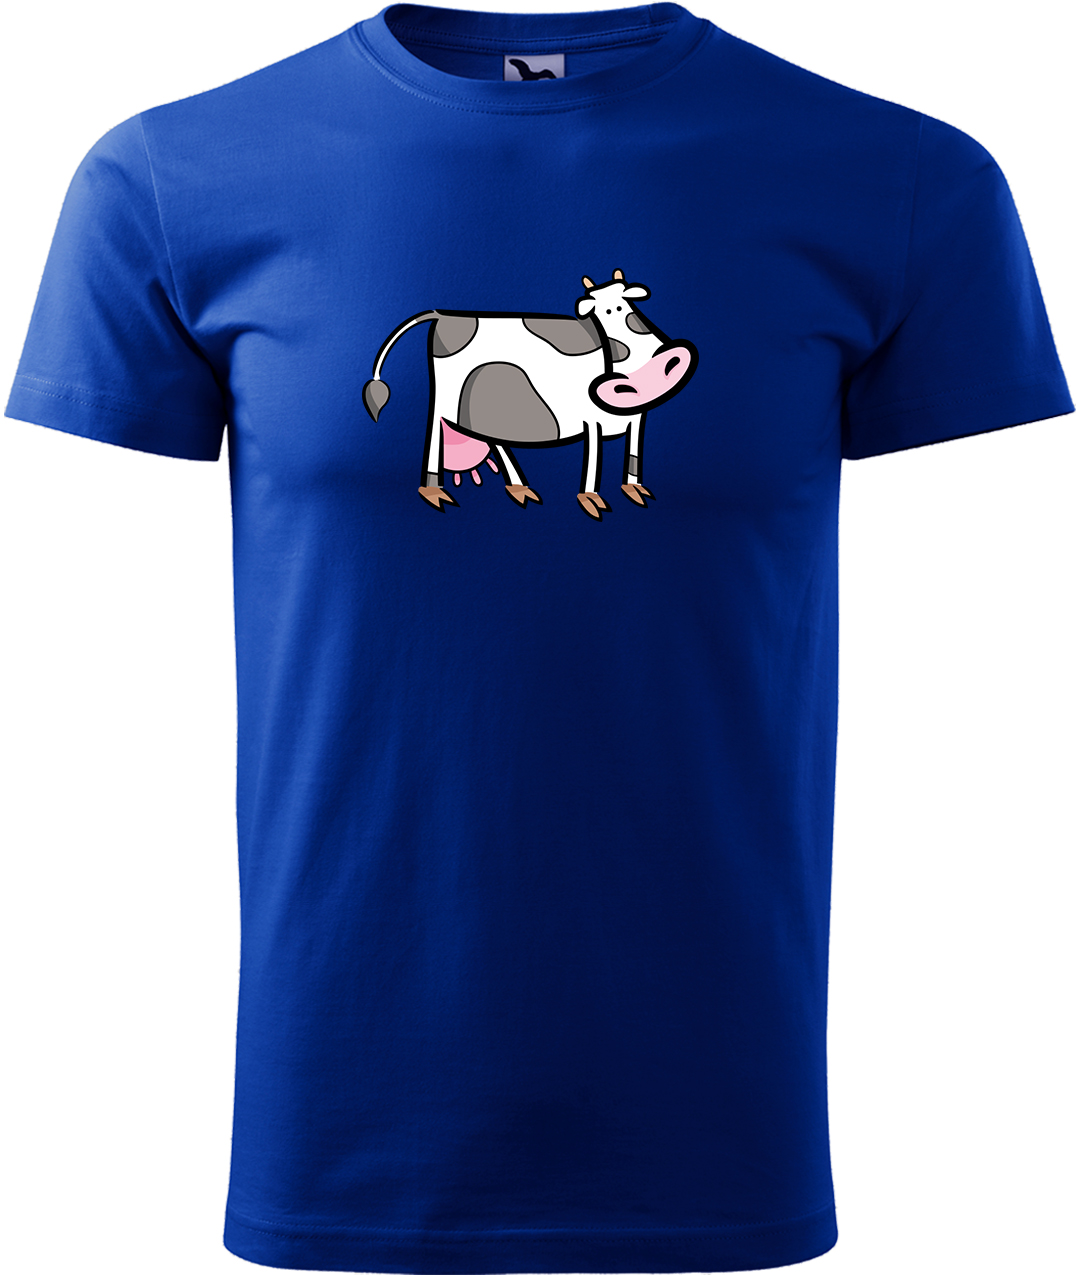 Pánské tričko s krávou - Kravička Velikost: L, Barva: Královská modrá (05), Střih: pánský